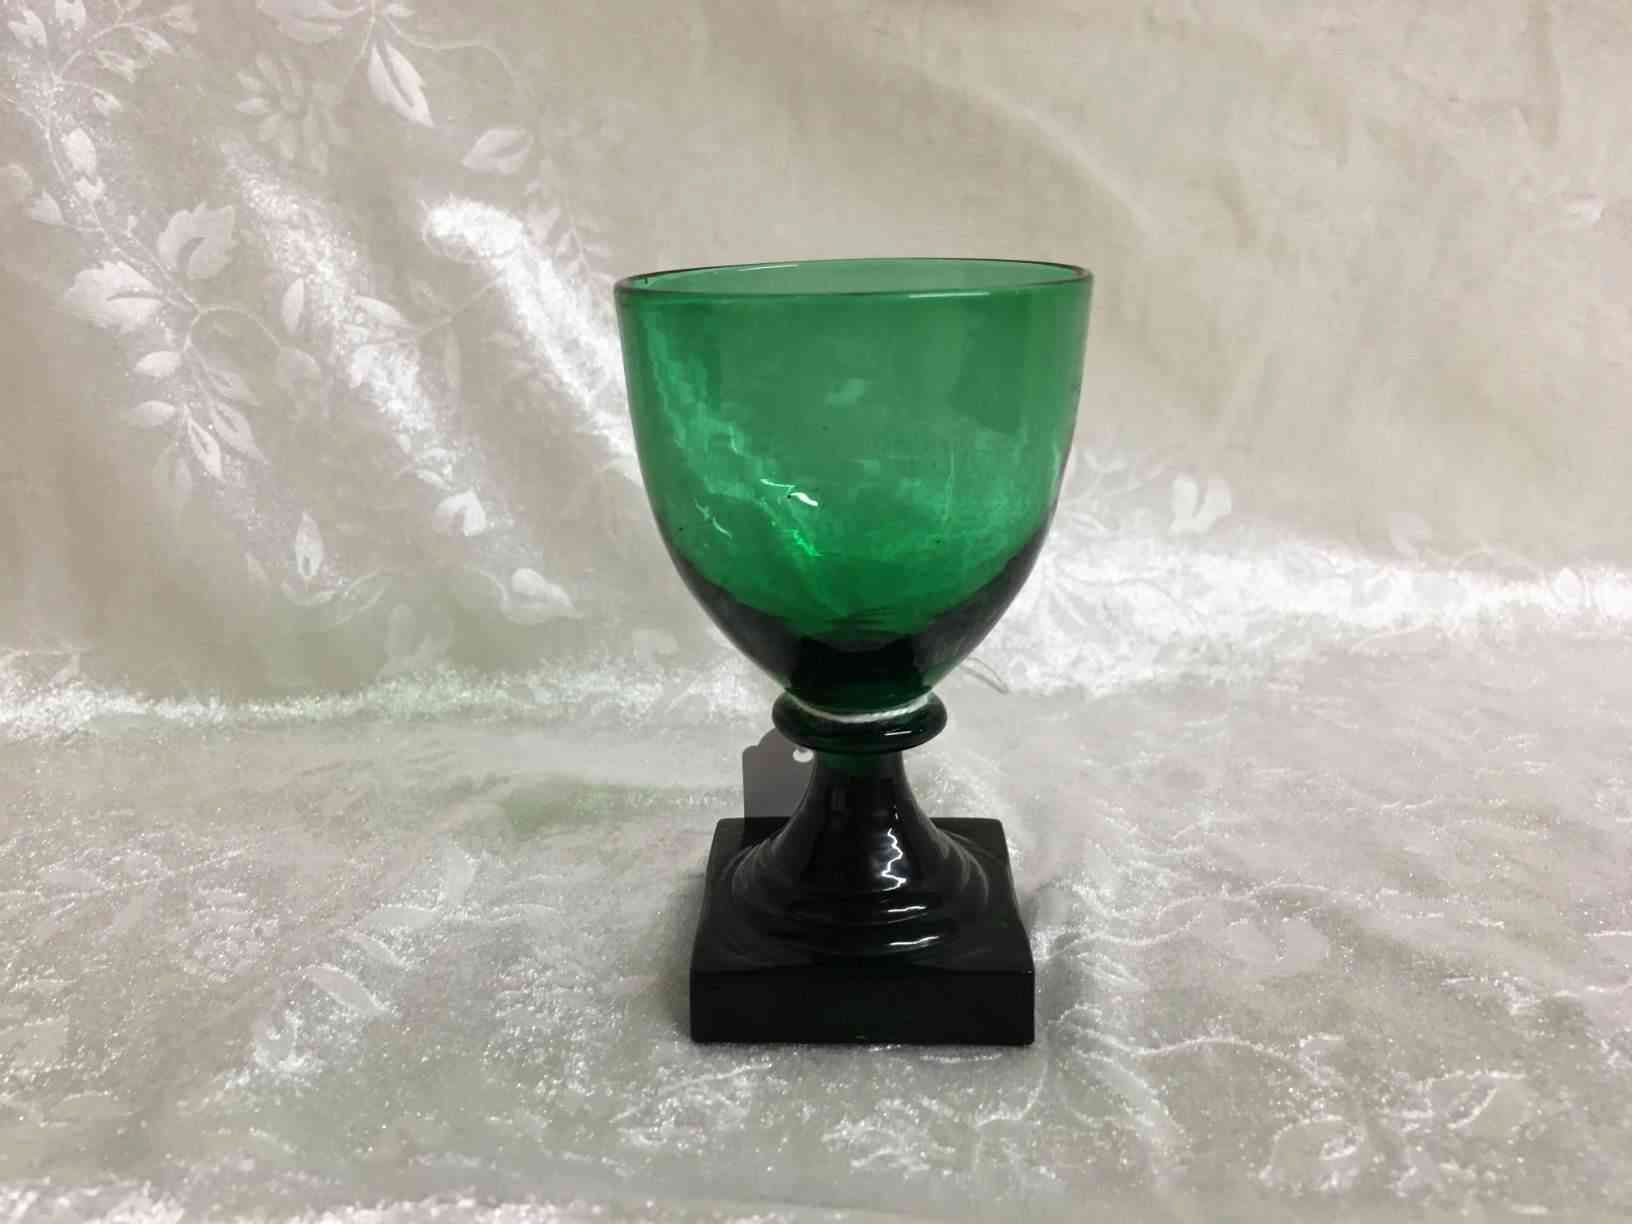 Holmegaard - Gorm den Gamle eller Viking grønt hedvinsglas 9,5 cm i perfekt stand. Pris: 350,- Kr. Glas fremstillet i mørkegrønt glas med kraftig firkantet fod, slebet firkantet eller presset i form, anhæftet mundblæst kumme. Bunden har opstukket "blomst" med runde kronblade. Formen "Skålform" er fra 1900, senere i 1920 udførtes de i mørkegrønt glas blandt andet til glasgrosserer Wiggo Dahl der solgte dem som "Gorm den Gamle". Holmegaard overtog senere forhandlingen af glassene og solgte dem som "Viking". Kastrup har en lignende serie kaldet Emma, dette er dog med slibninger i kummen.